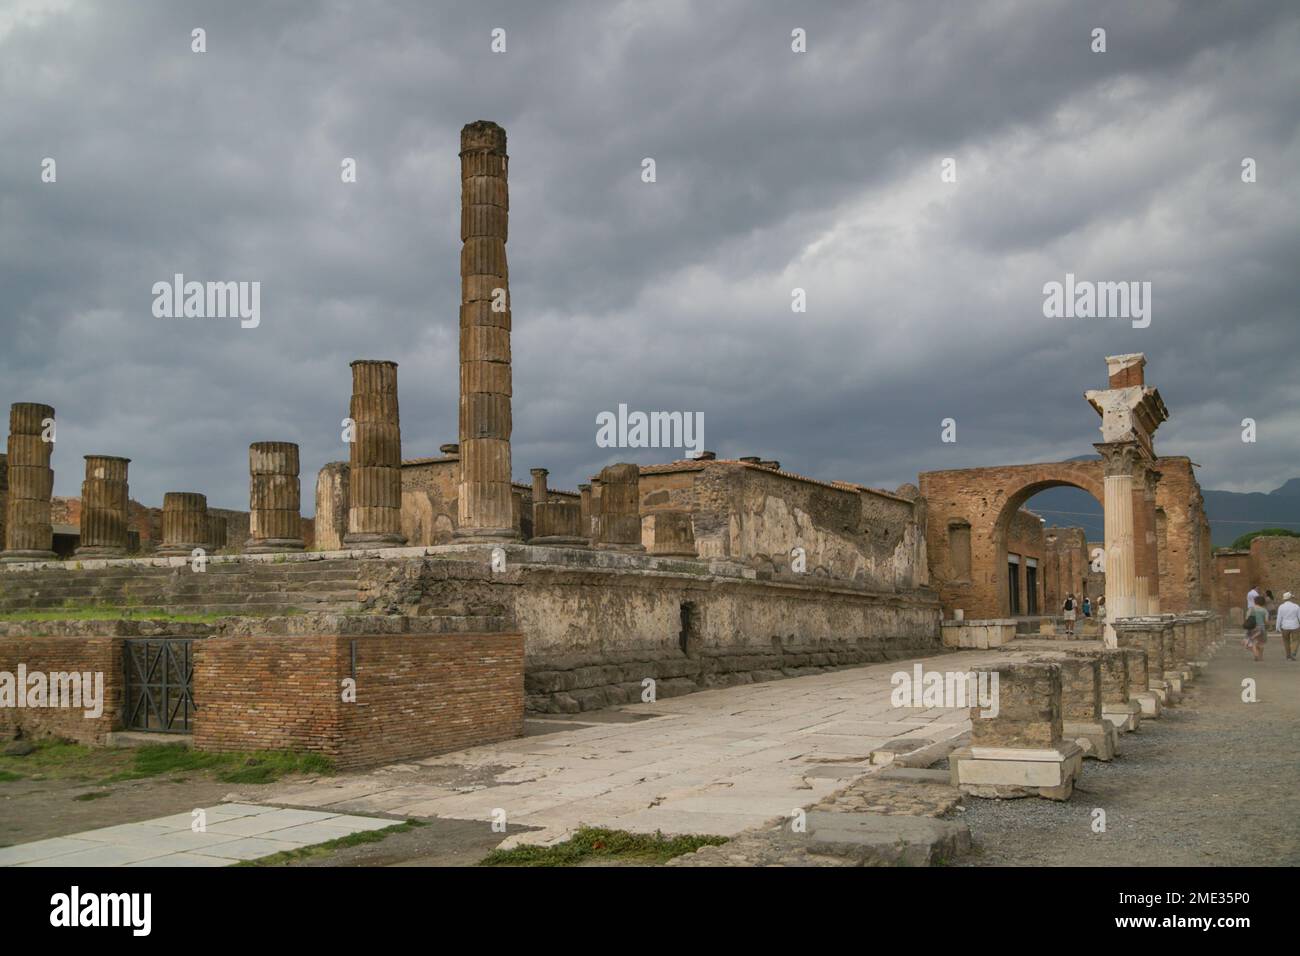 Des bâtiments en pierre ont été creusés dans l'ancienne ville romaine de Pompéi, site archéologique classé au patrimoine mondial de l'UNESCO à Pompéi, en Campanie, en Italie. Banque D'Images